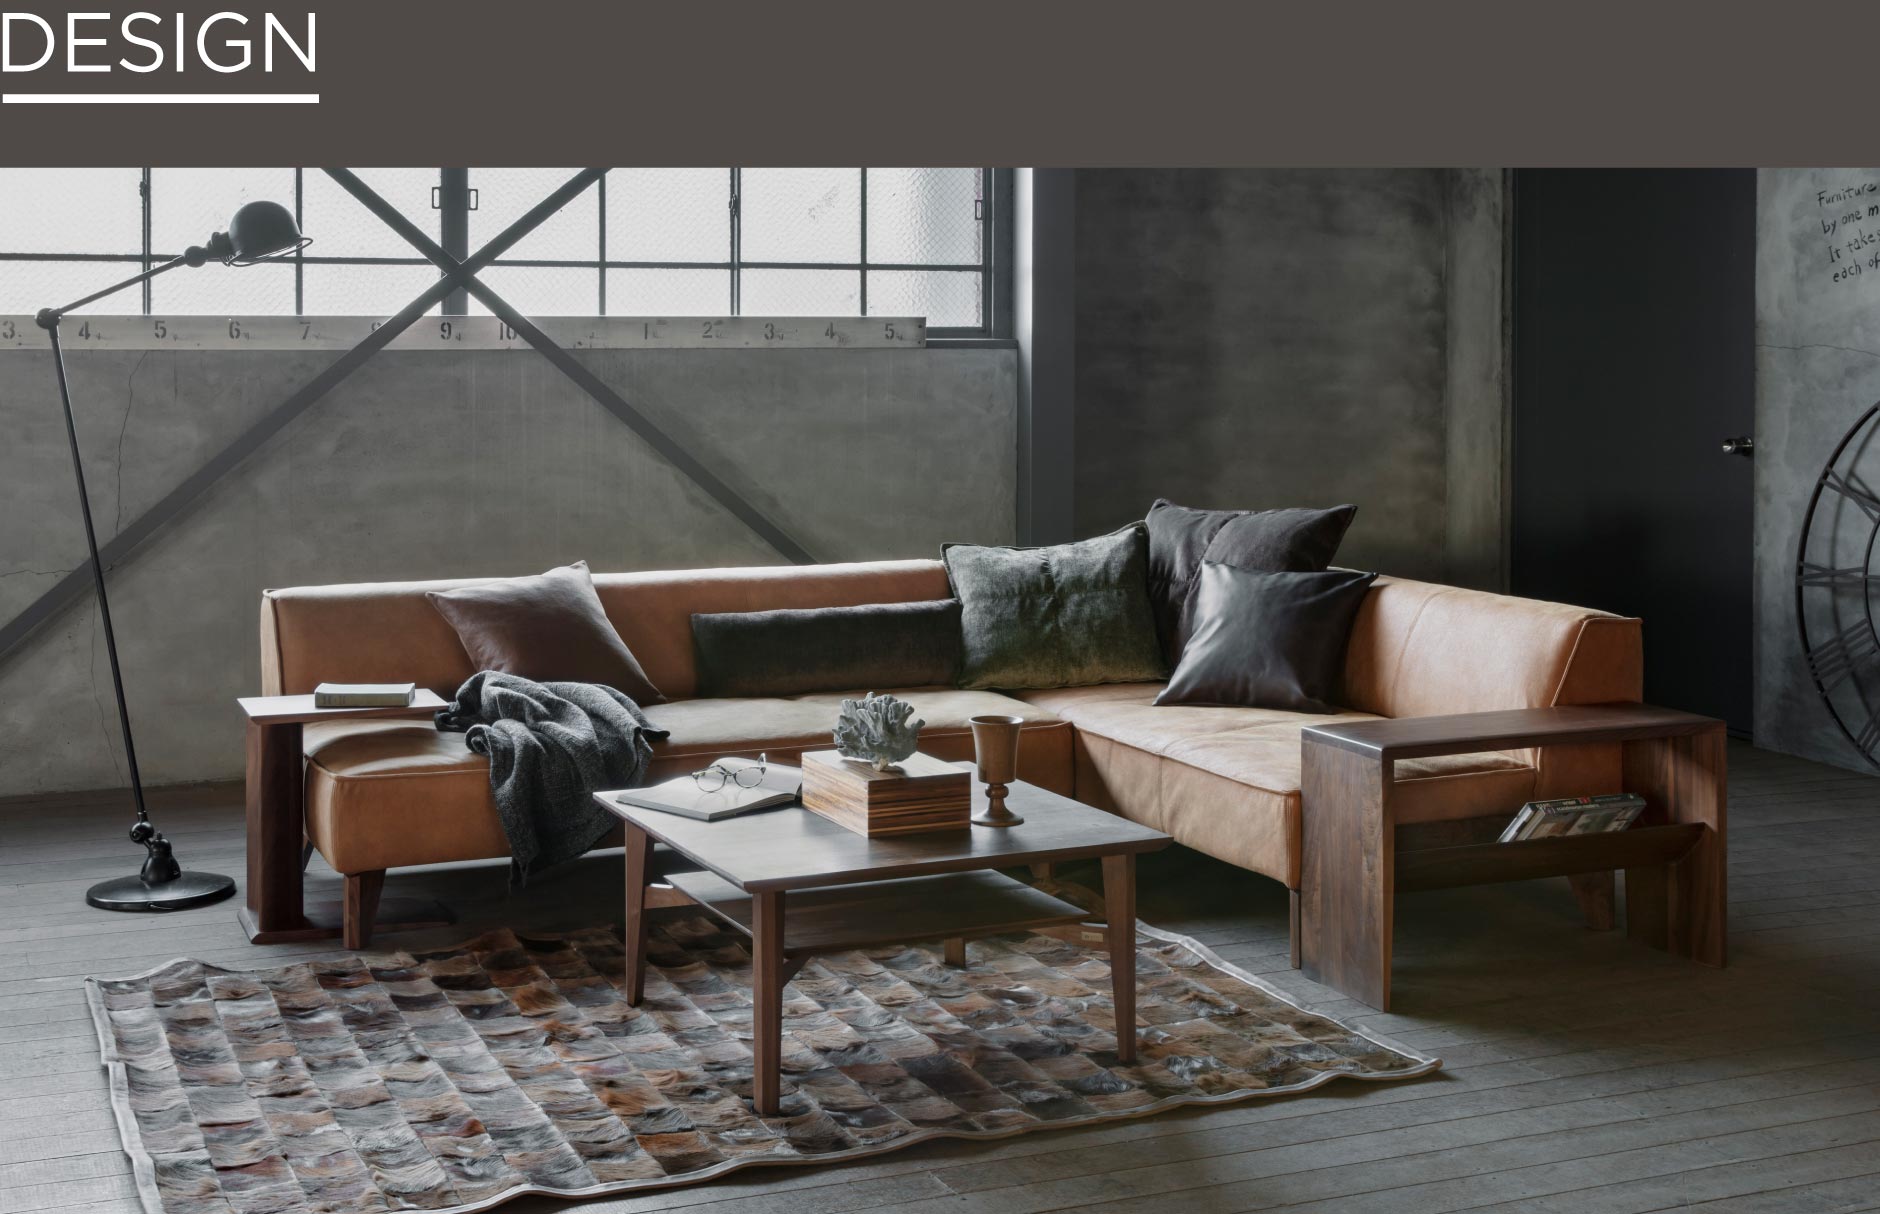 SOLIDの家具の中でも使い勝手の良い正方形のリビングテーブル。コーナータイプのソファなどに合わせて使うと空間が纏まります。